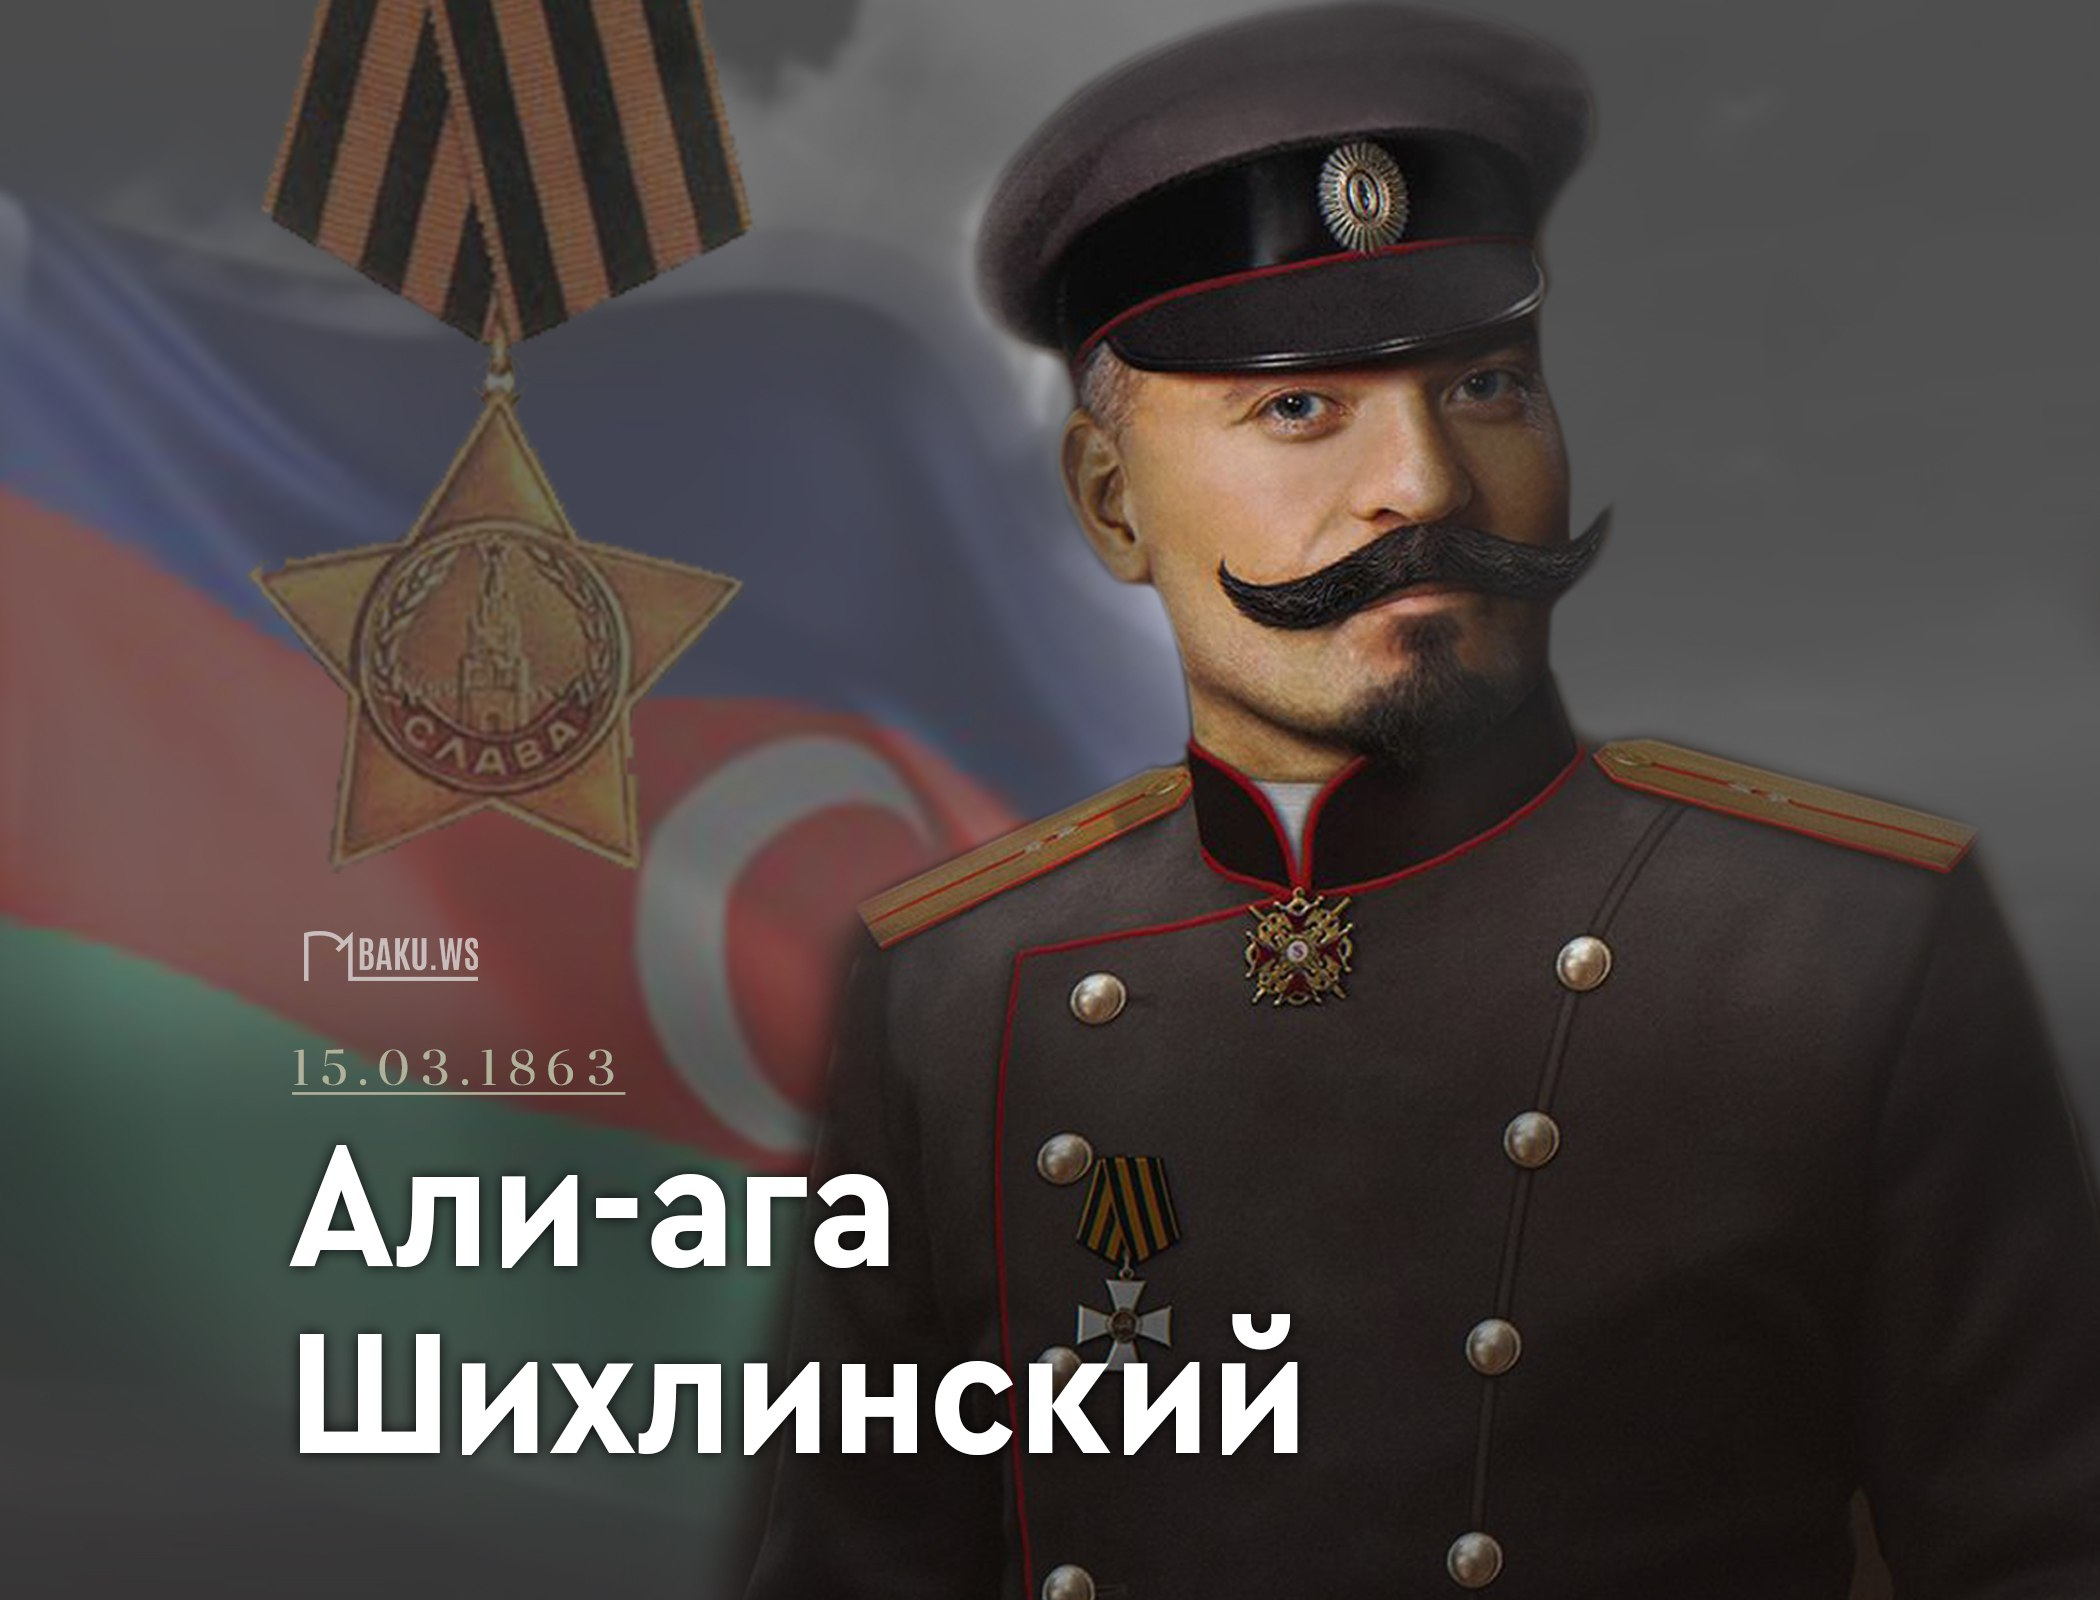 160 лет со дня рождения "бога артиллерии" Али-аги Шихлинского